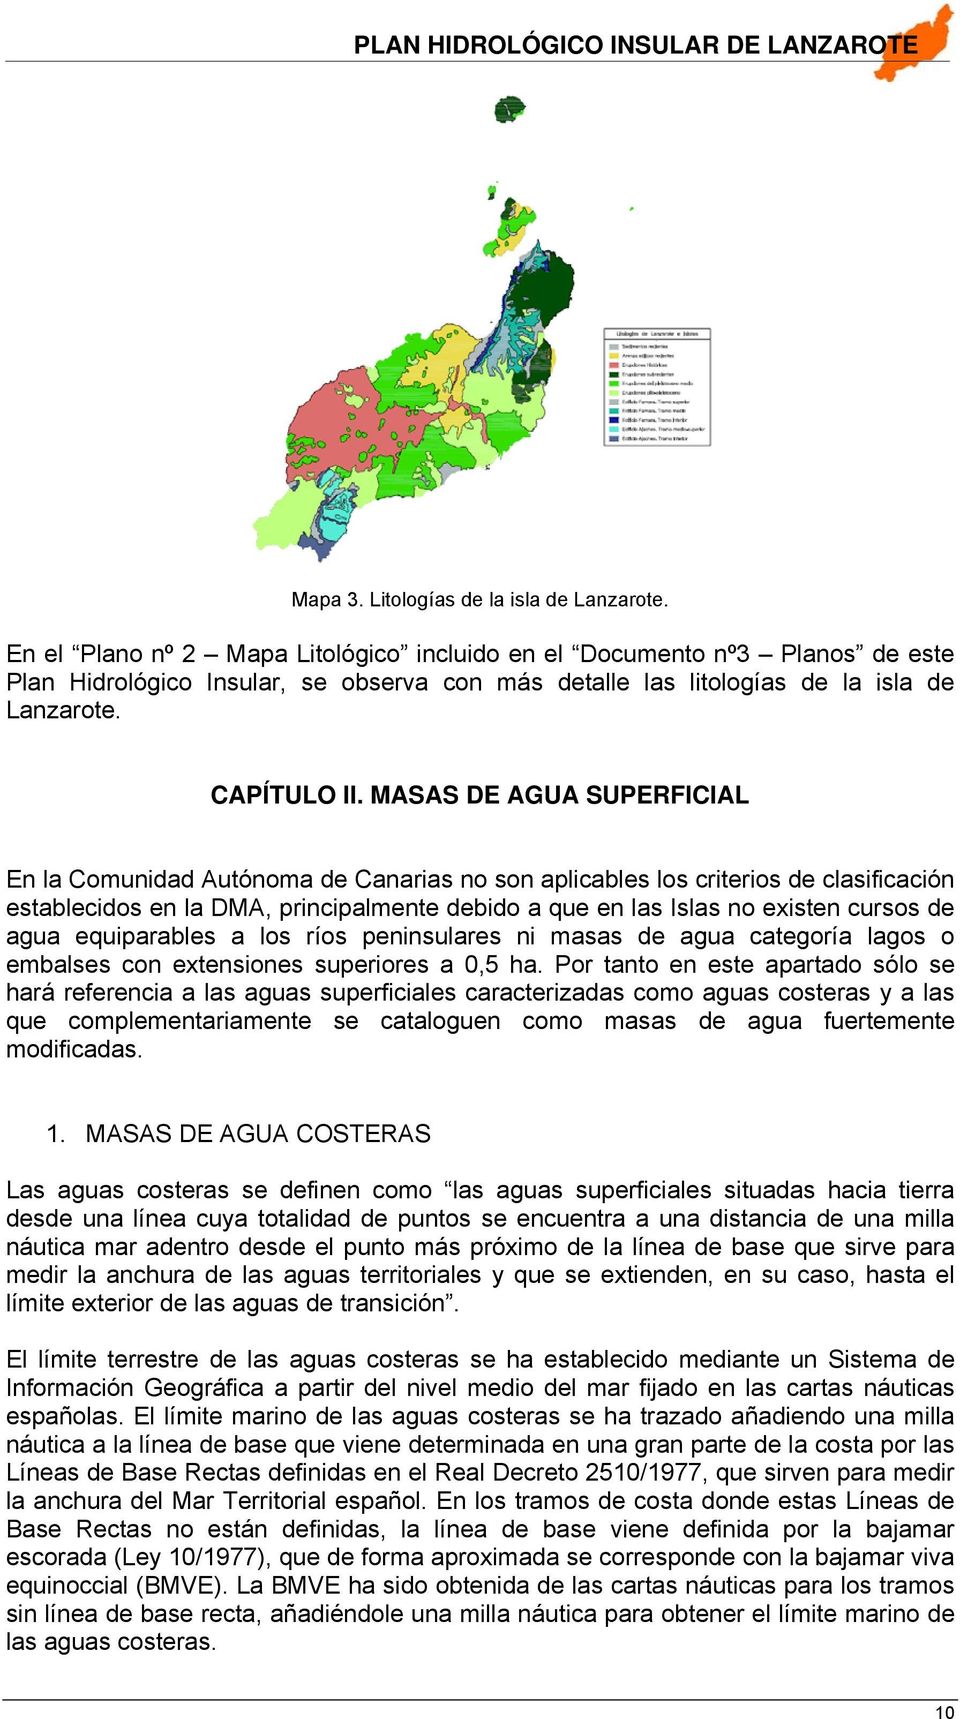 MASAS DE AGUA SUPERFICIAL En la Comunidad Autónoma de Canarias no son aplicables los criterios de clasificación establecidos en la DMA, principalmente debido a que en las Islas no existen cursos de